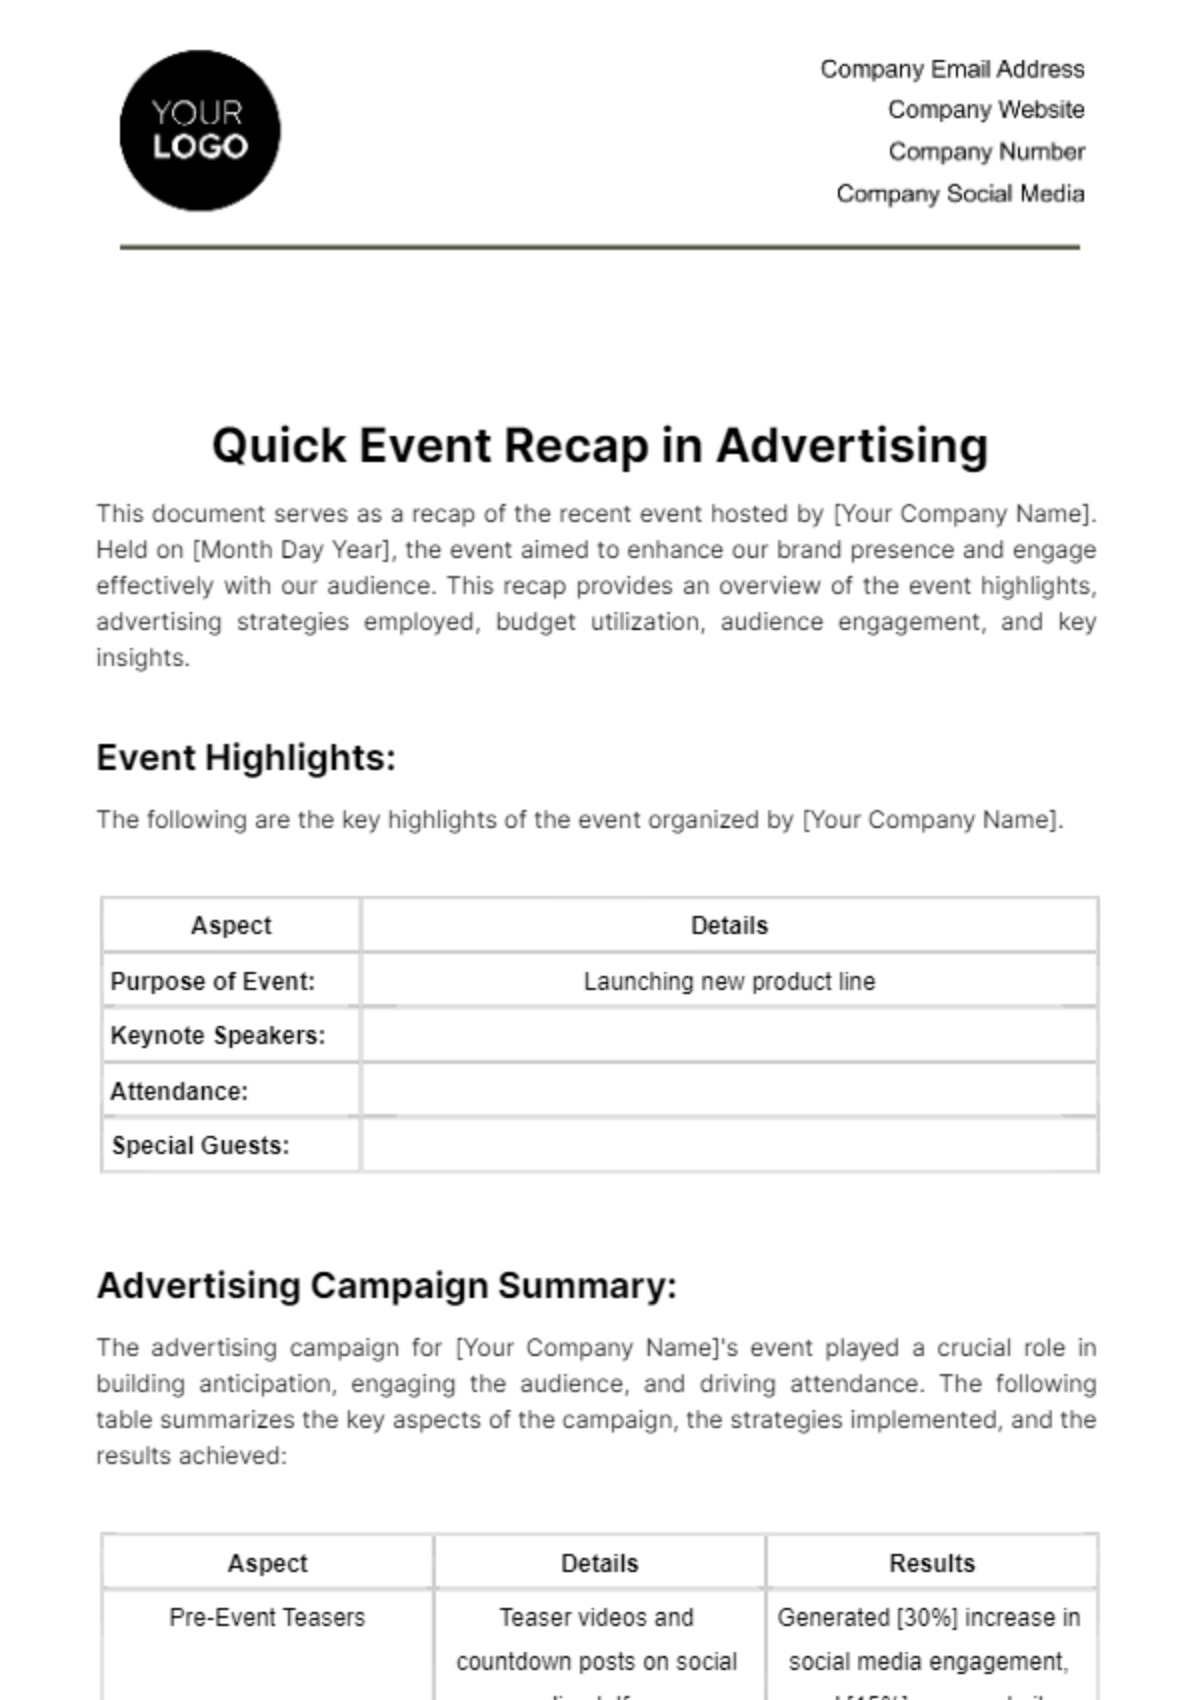 Quick Event Recap in Advertising Template